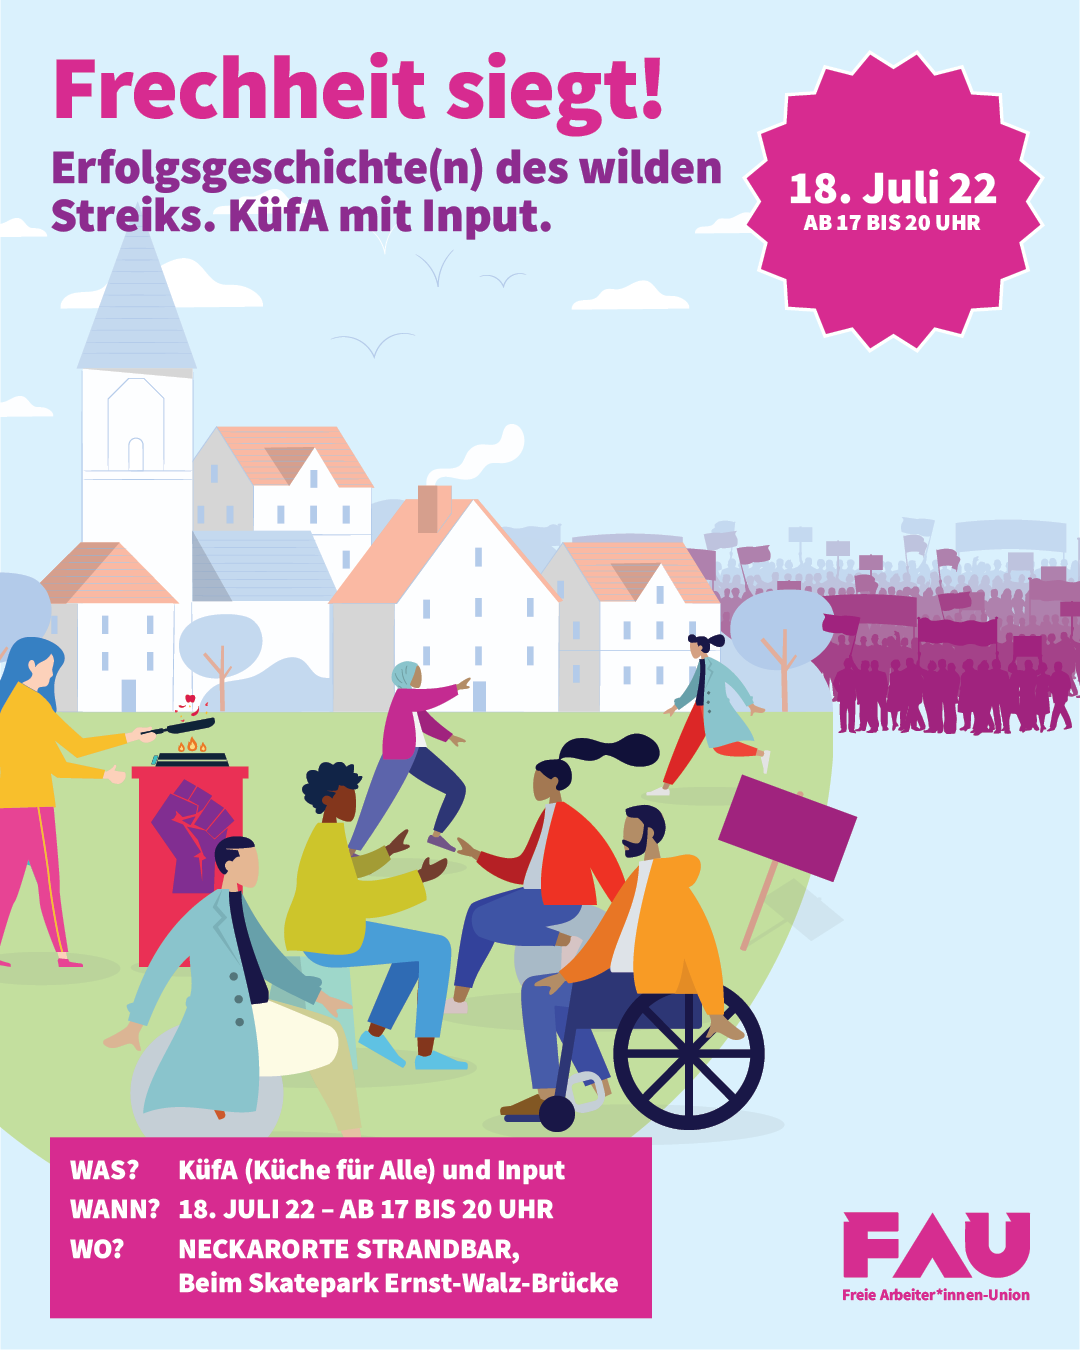 Einladung zur Küfa am 18. Juli 2022, 17 bis 20 Uhr beim Skatepark an der Enrst-Walz-Brücke in Heidelberg.